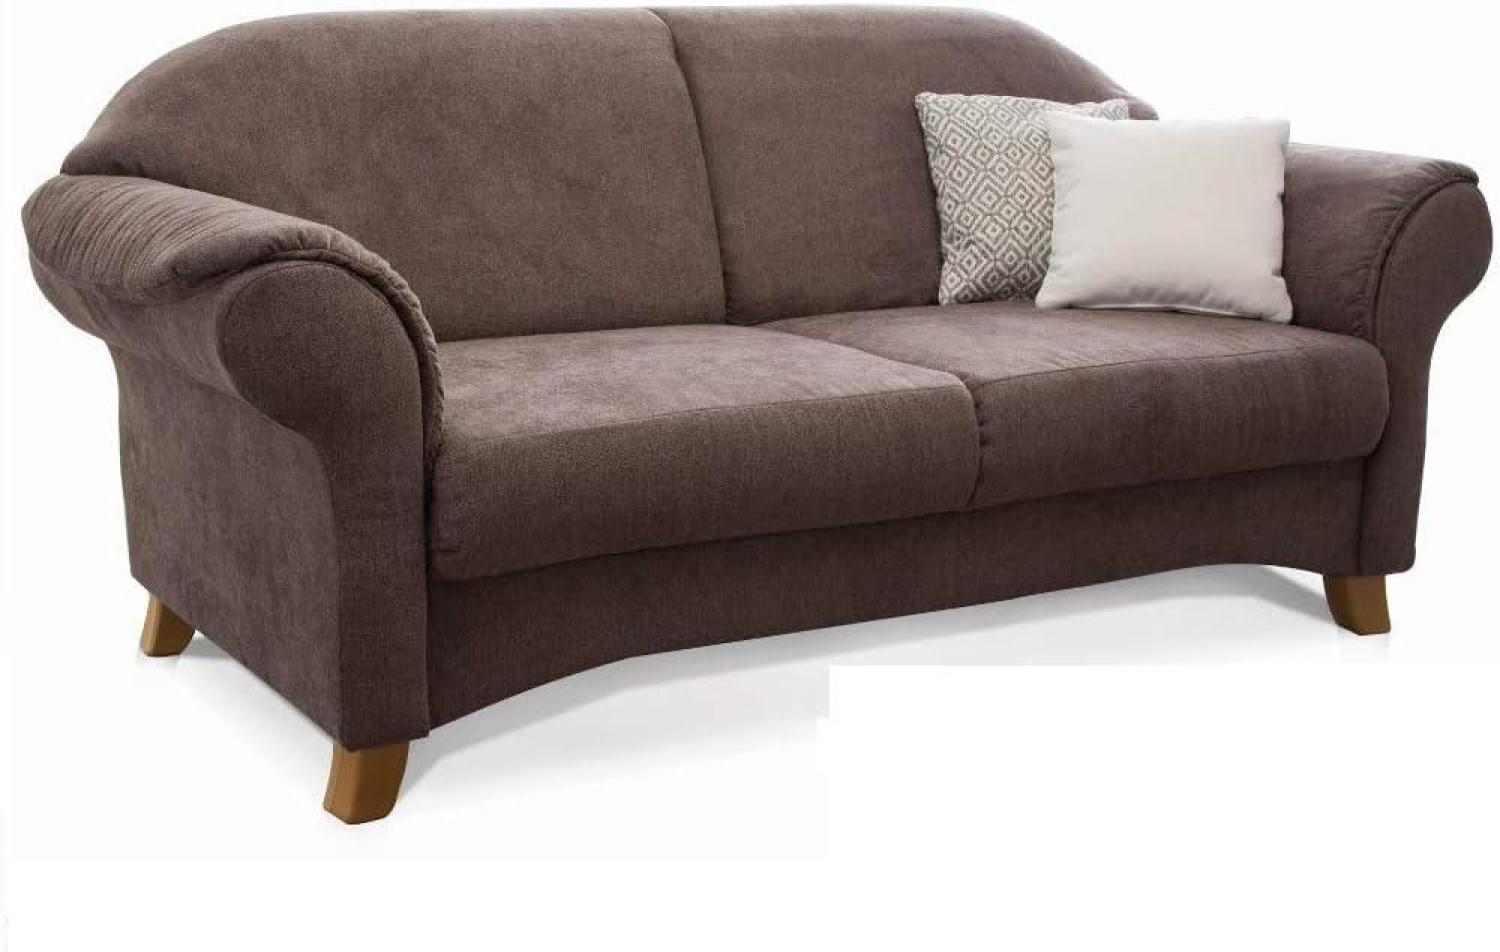 Cavadore 2-Sitzer Sofa Maifayr mit Federkern / Moderne 2-sitzige Couch im Landhausstil mit Holzfüßen / 164 x 90 x 90 / braun Bild 1